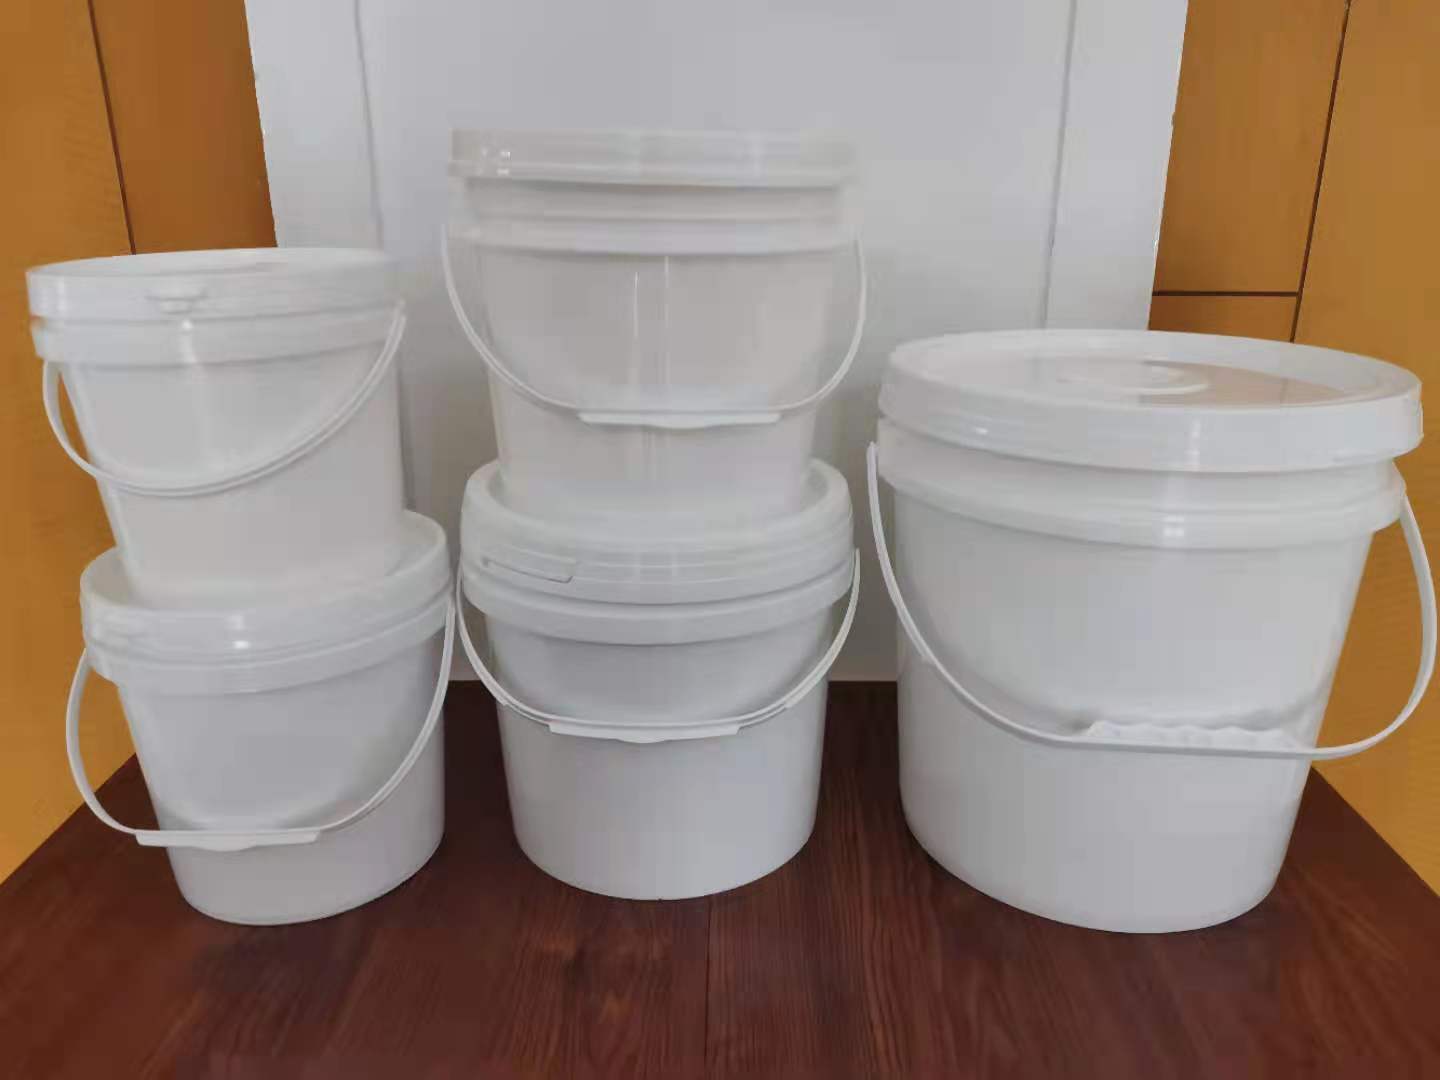 江苏常州化工桶厂家承接注塑桶来样开模-定制生产PP塑料桶-涂料桶-机油桶-美式桶